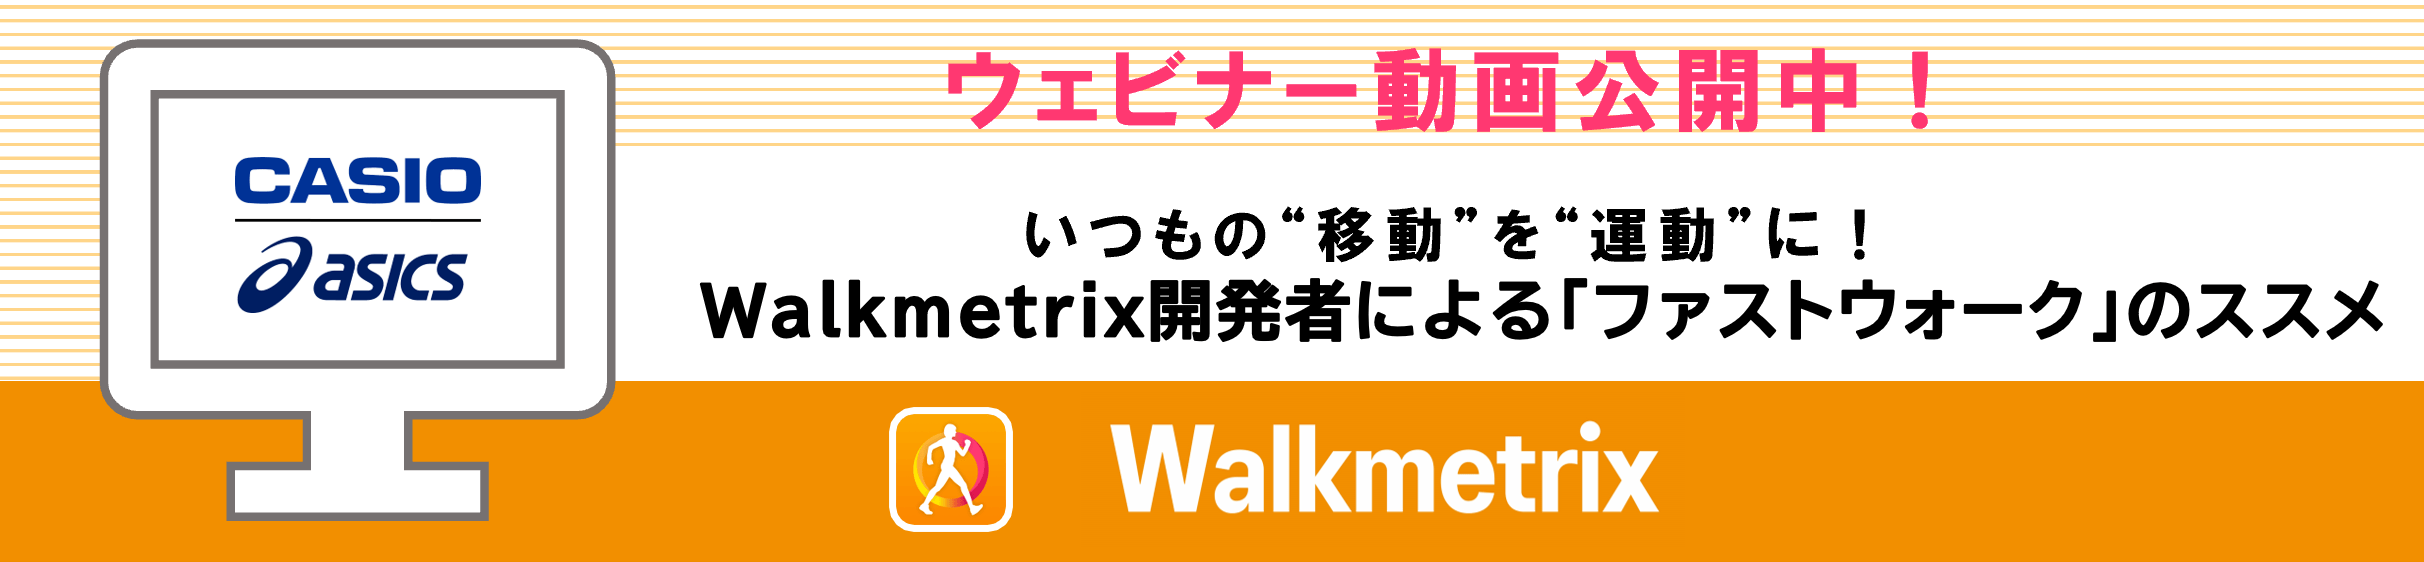 ウェビナー動画公開中!いつもの“移動“を“運動“に!Walkmetrix開発者による「ファストウォーク」のススメ Walkmetrix